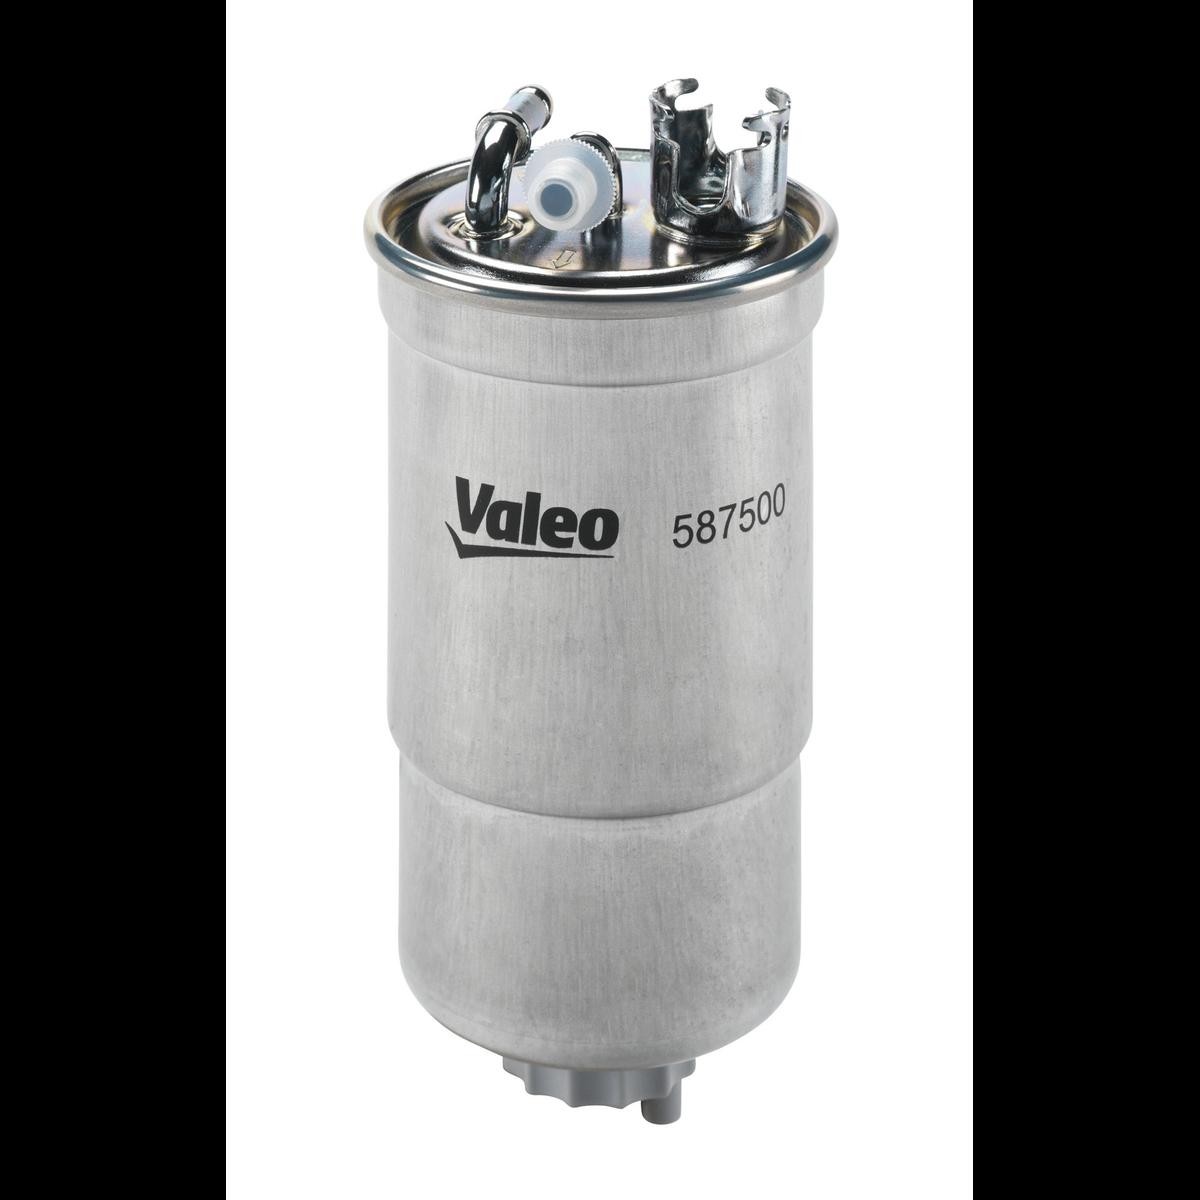 Palivový filtr 587500 s vynikajícím poměrem mezi cenou a VALEO kvalitou